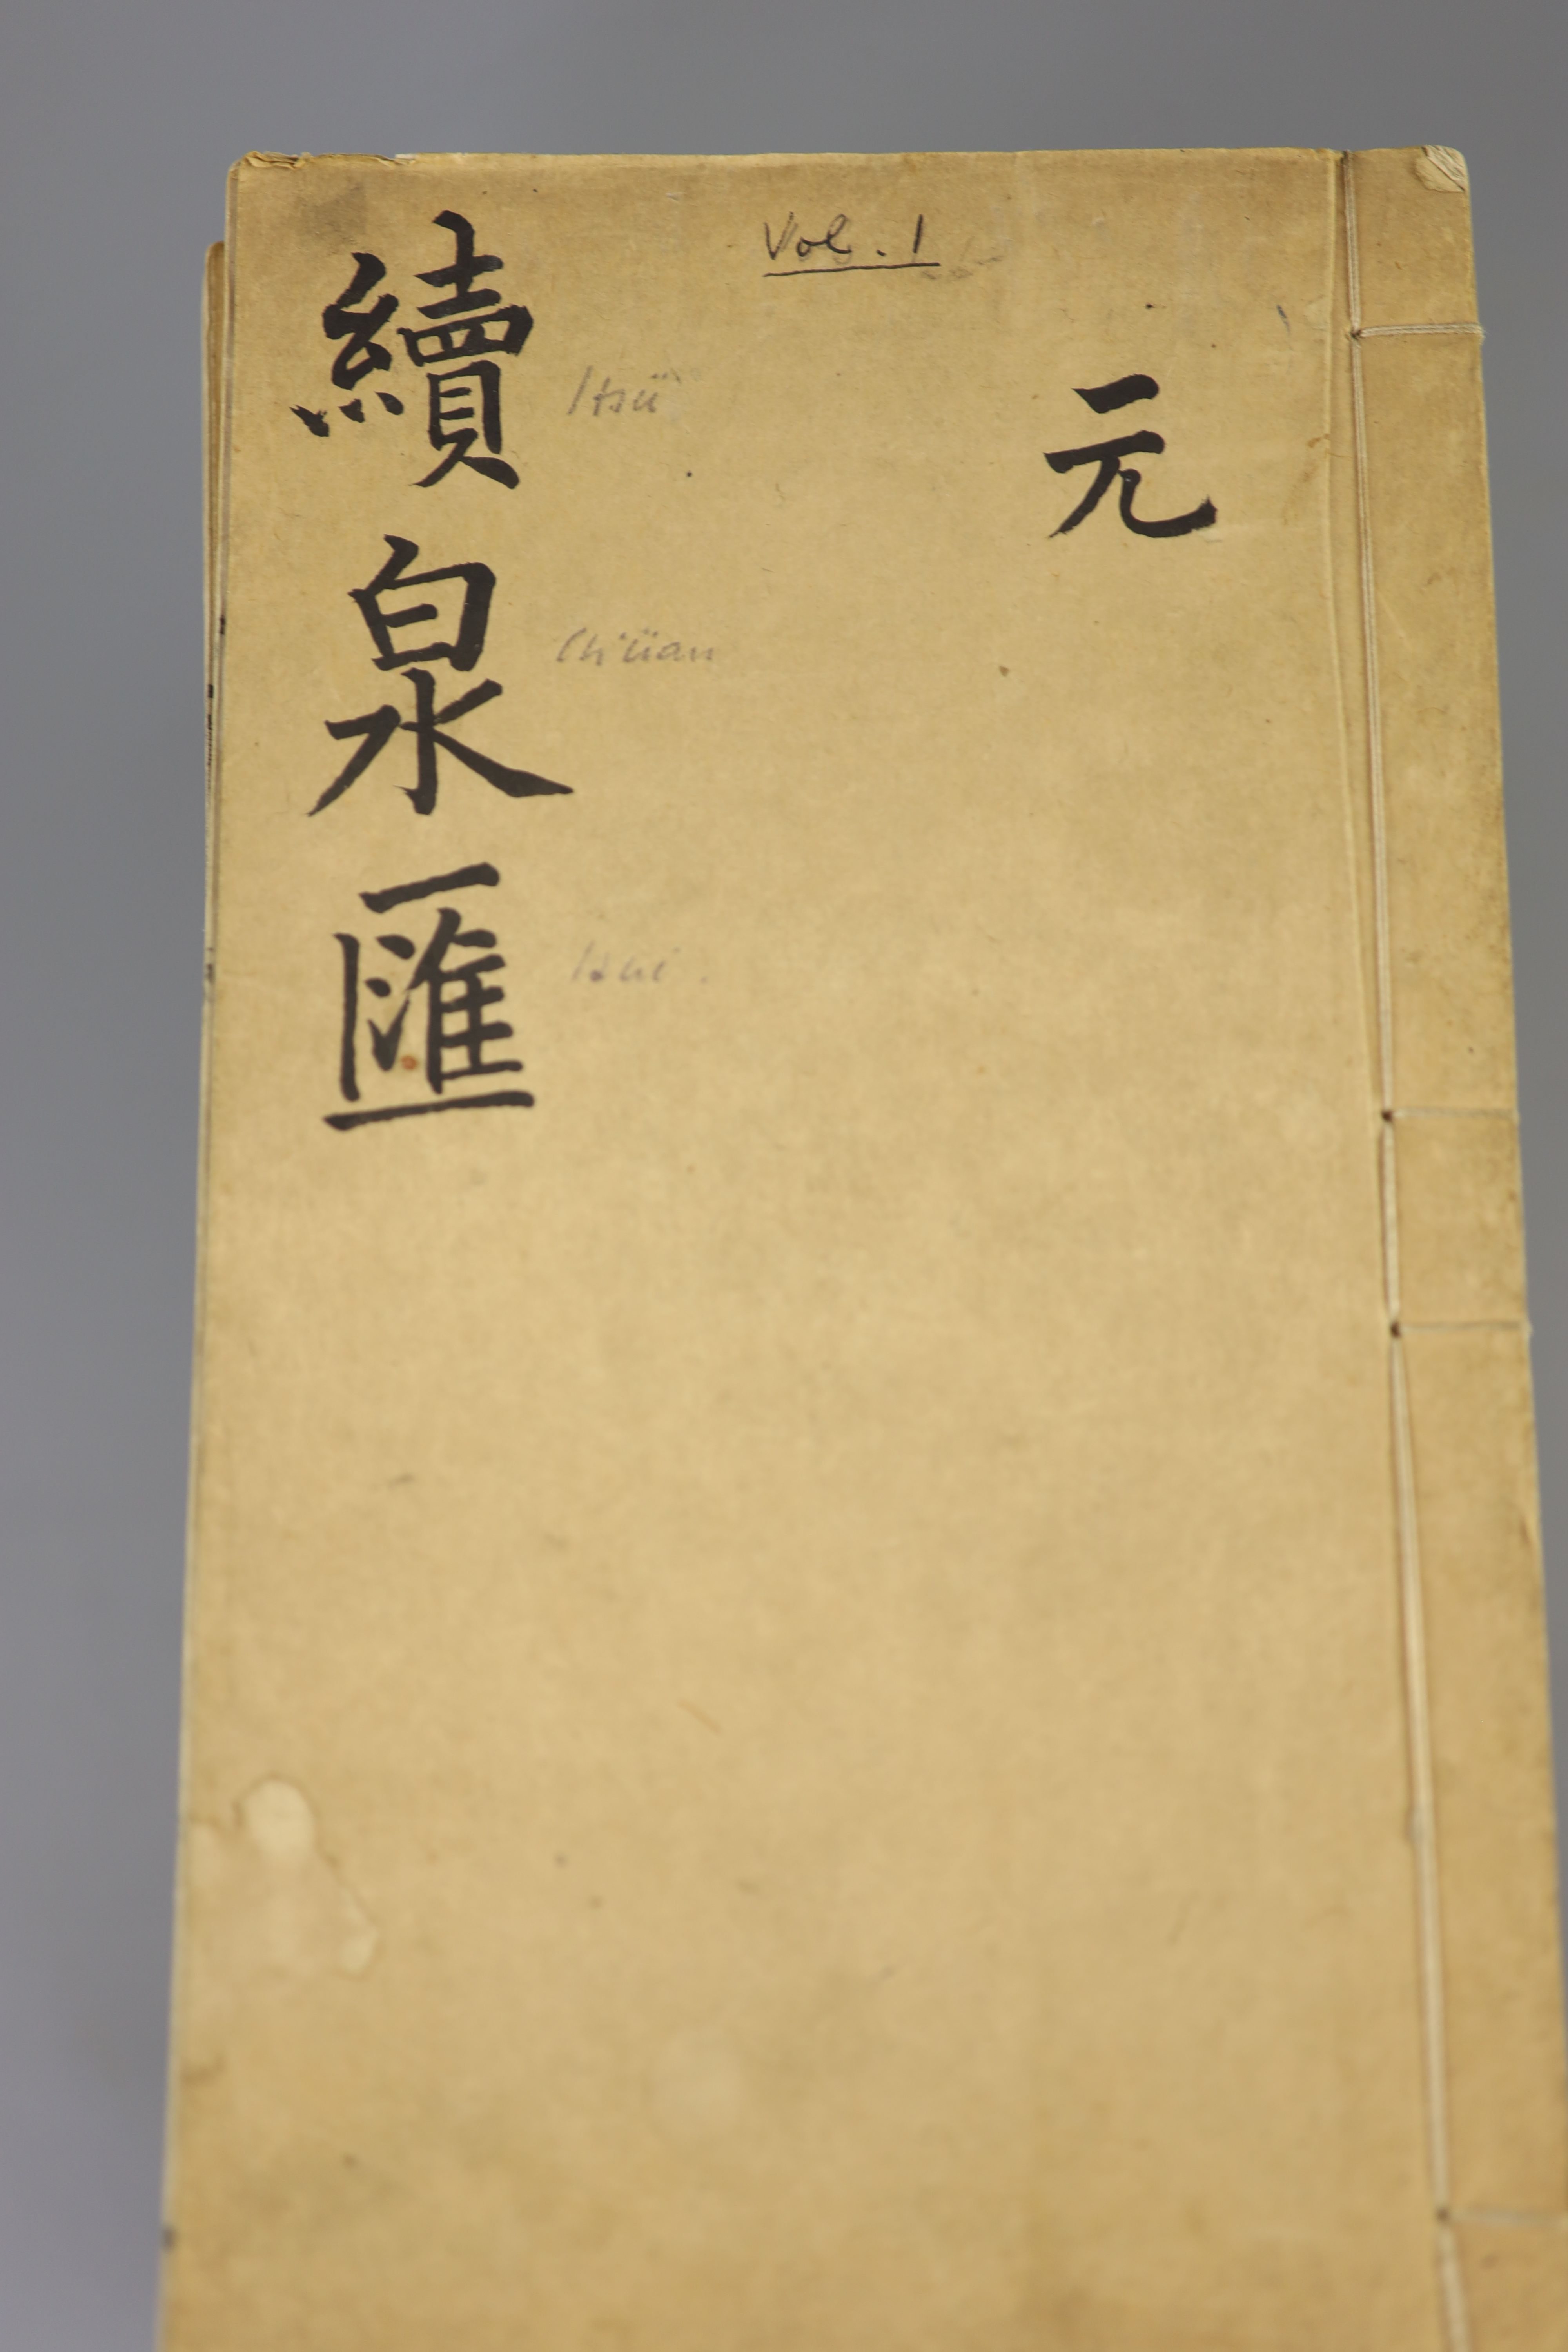 Li Zhuoxian, Gu quan hui (Collecting old coins), published in Beijing, Tongzhi jia zi, 1864, 16 volumes and Li Zhuoxian, Xua quan hu